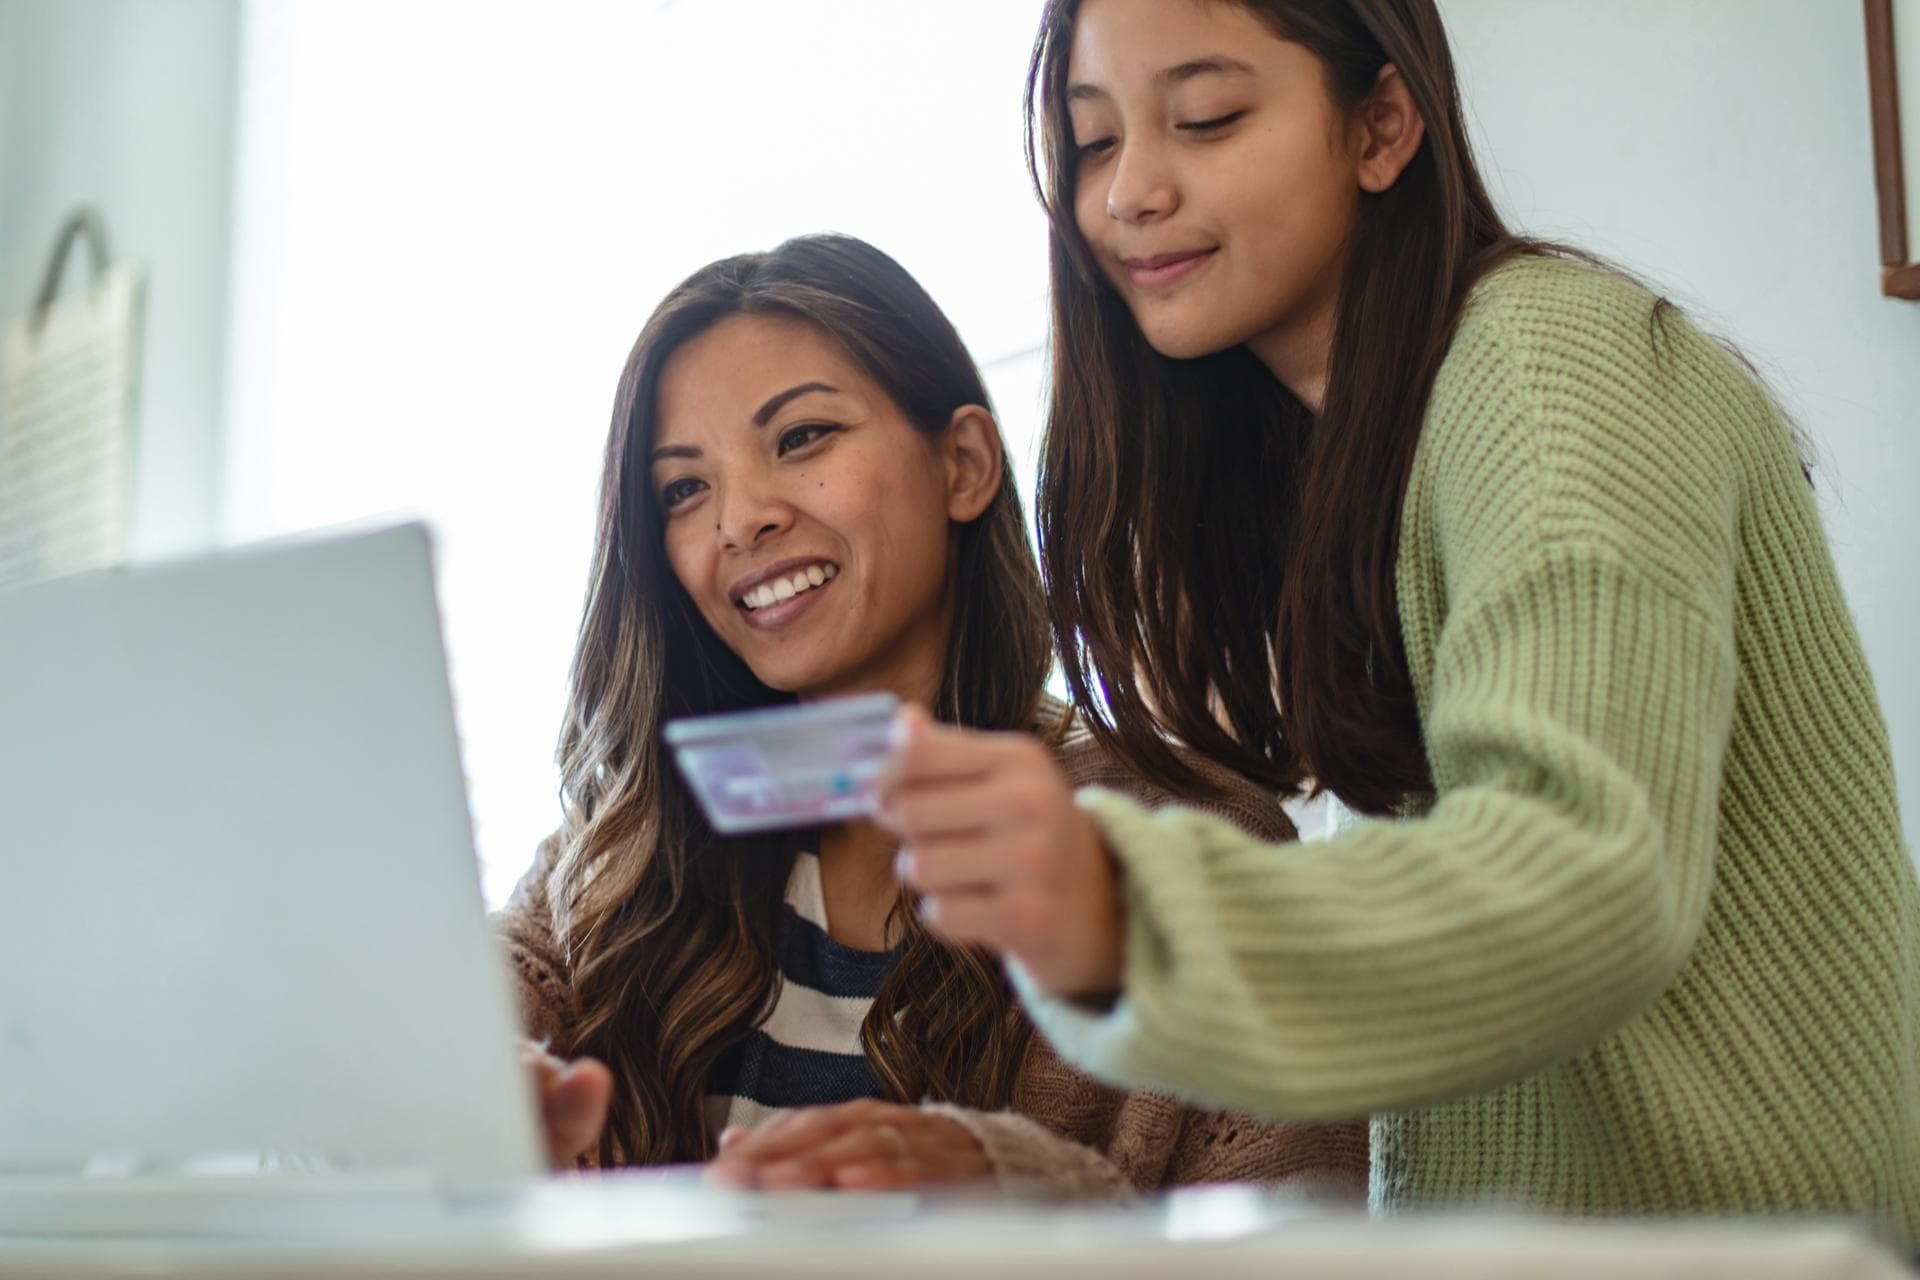 Zwei junge Frauen mit langen, dunklen Haaren schauen auf den Bildschirm eines Laptops, eine sitzend, eine stehend. Die Stehende hält eine Kreditkarte in der Hand.